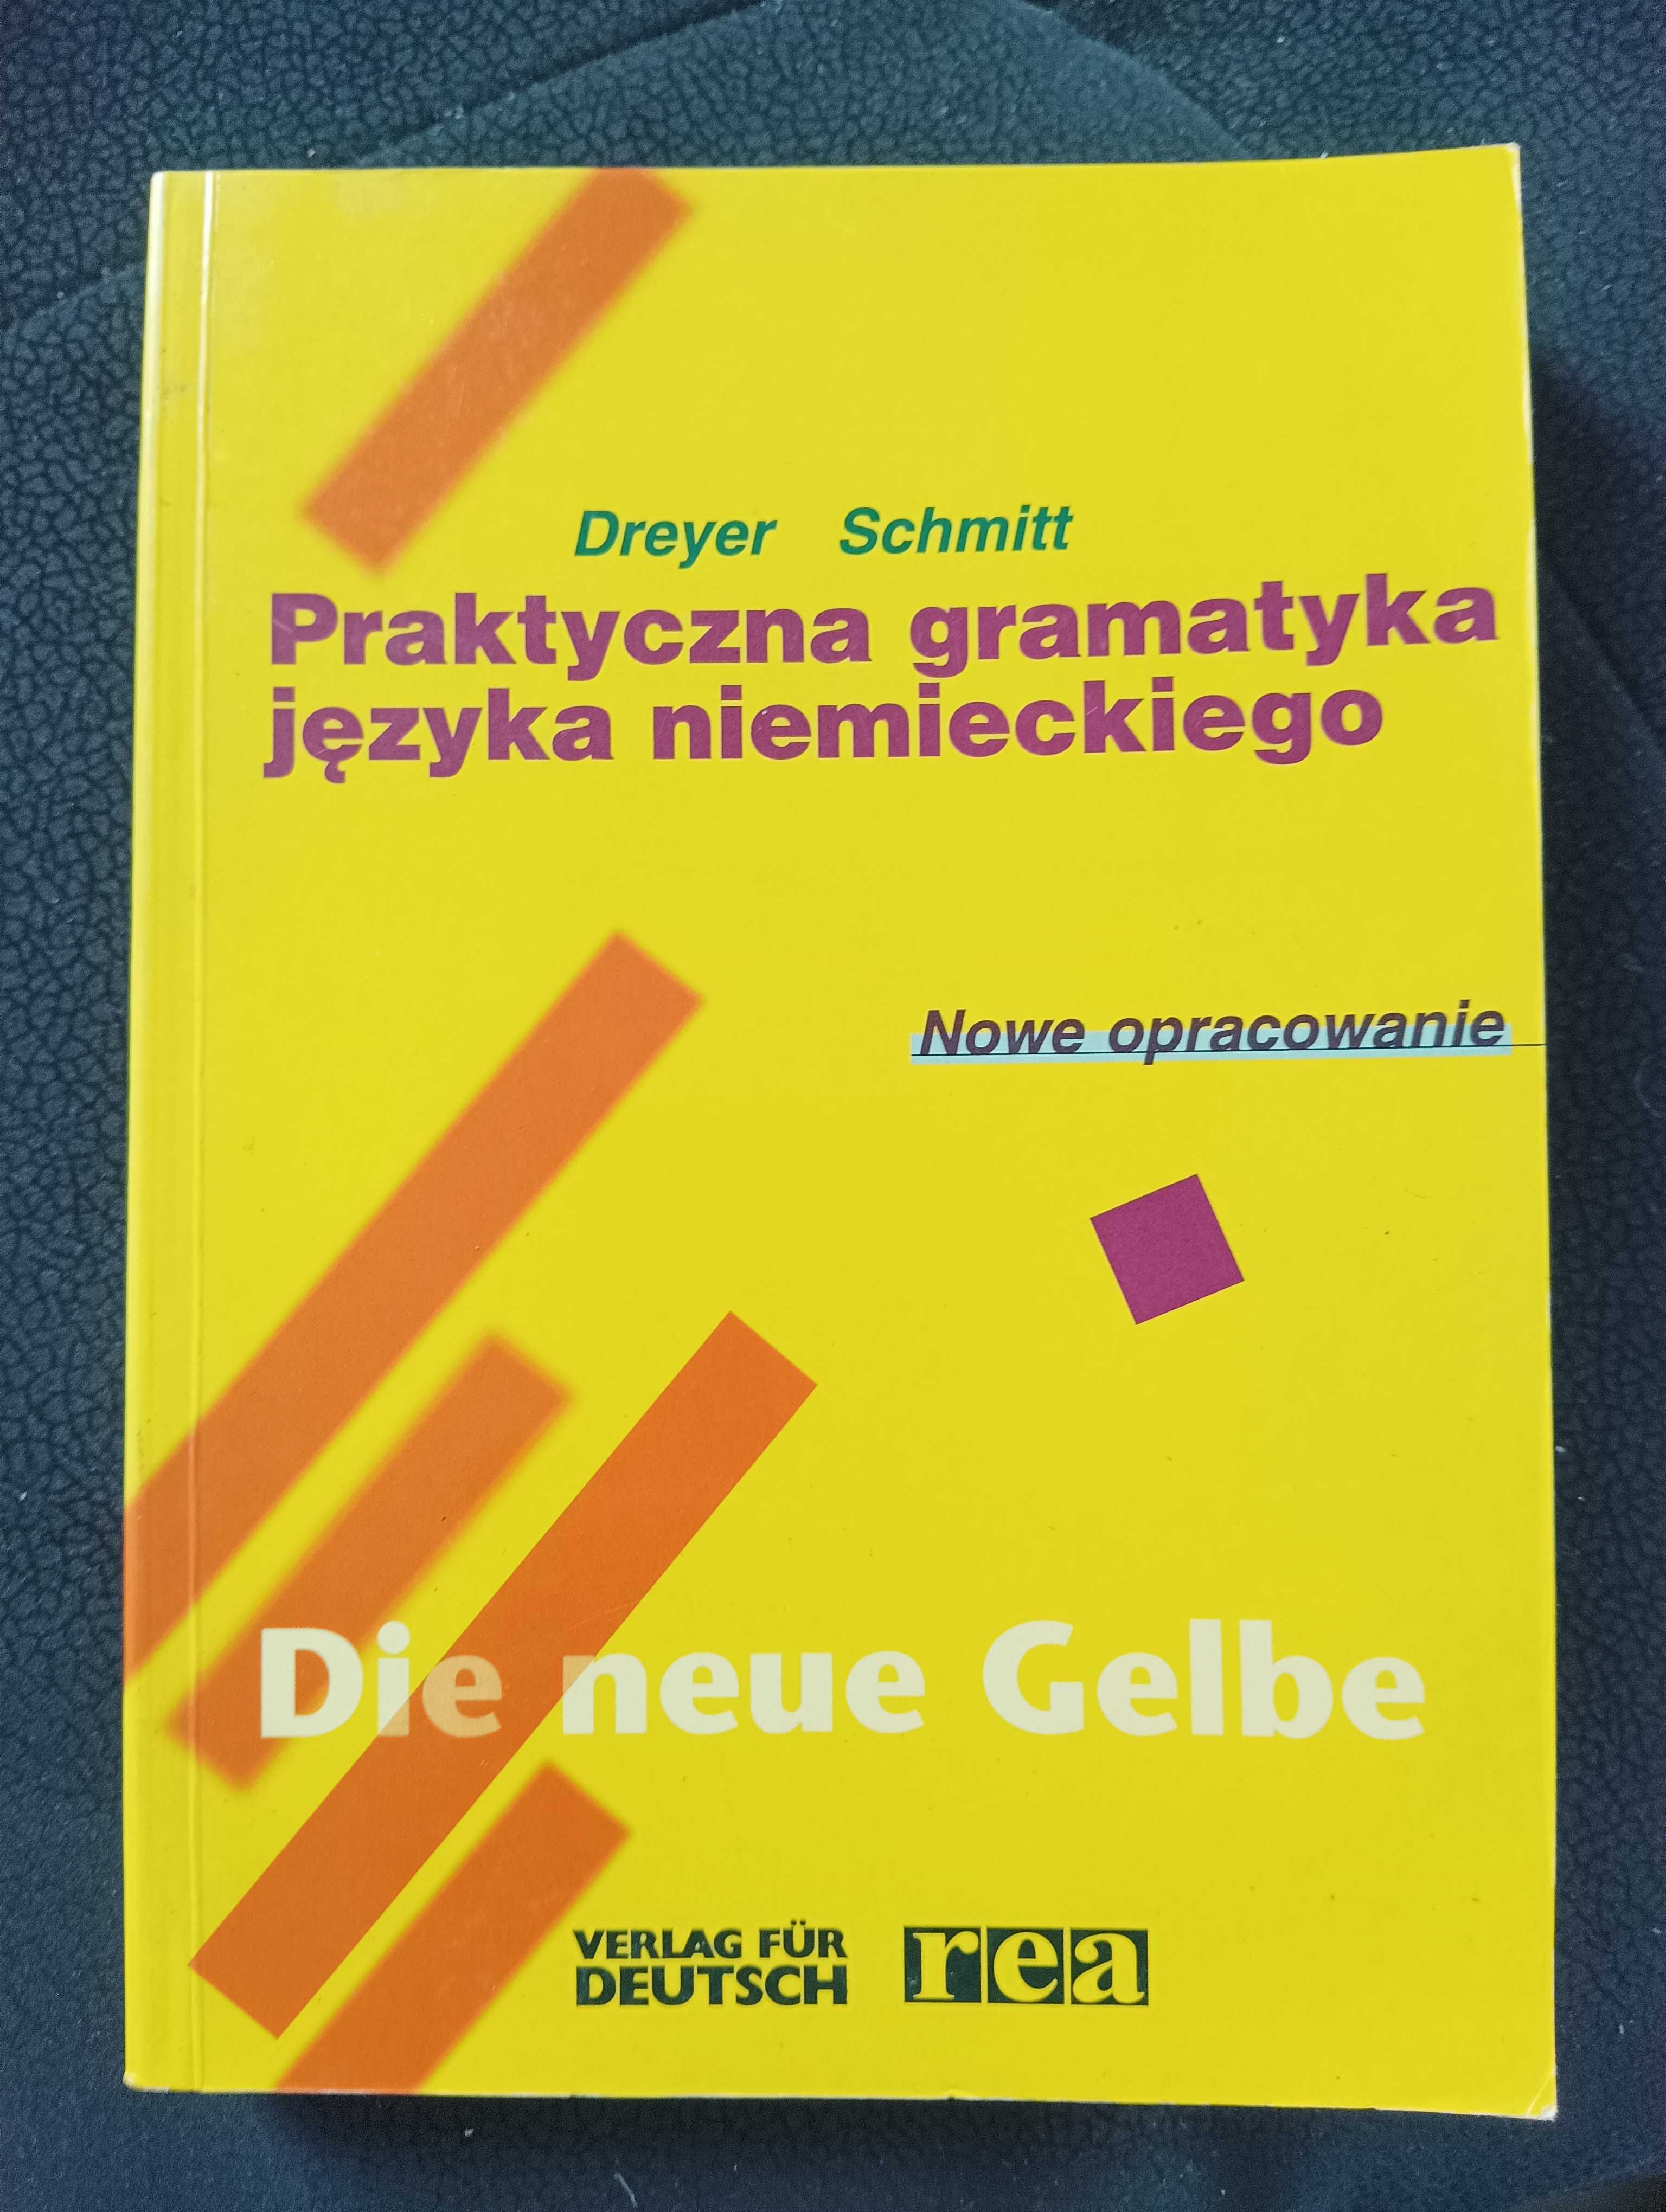 Praktyczna gramatyka języka niemieckiego. Dreyer Schmitt